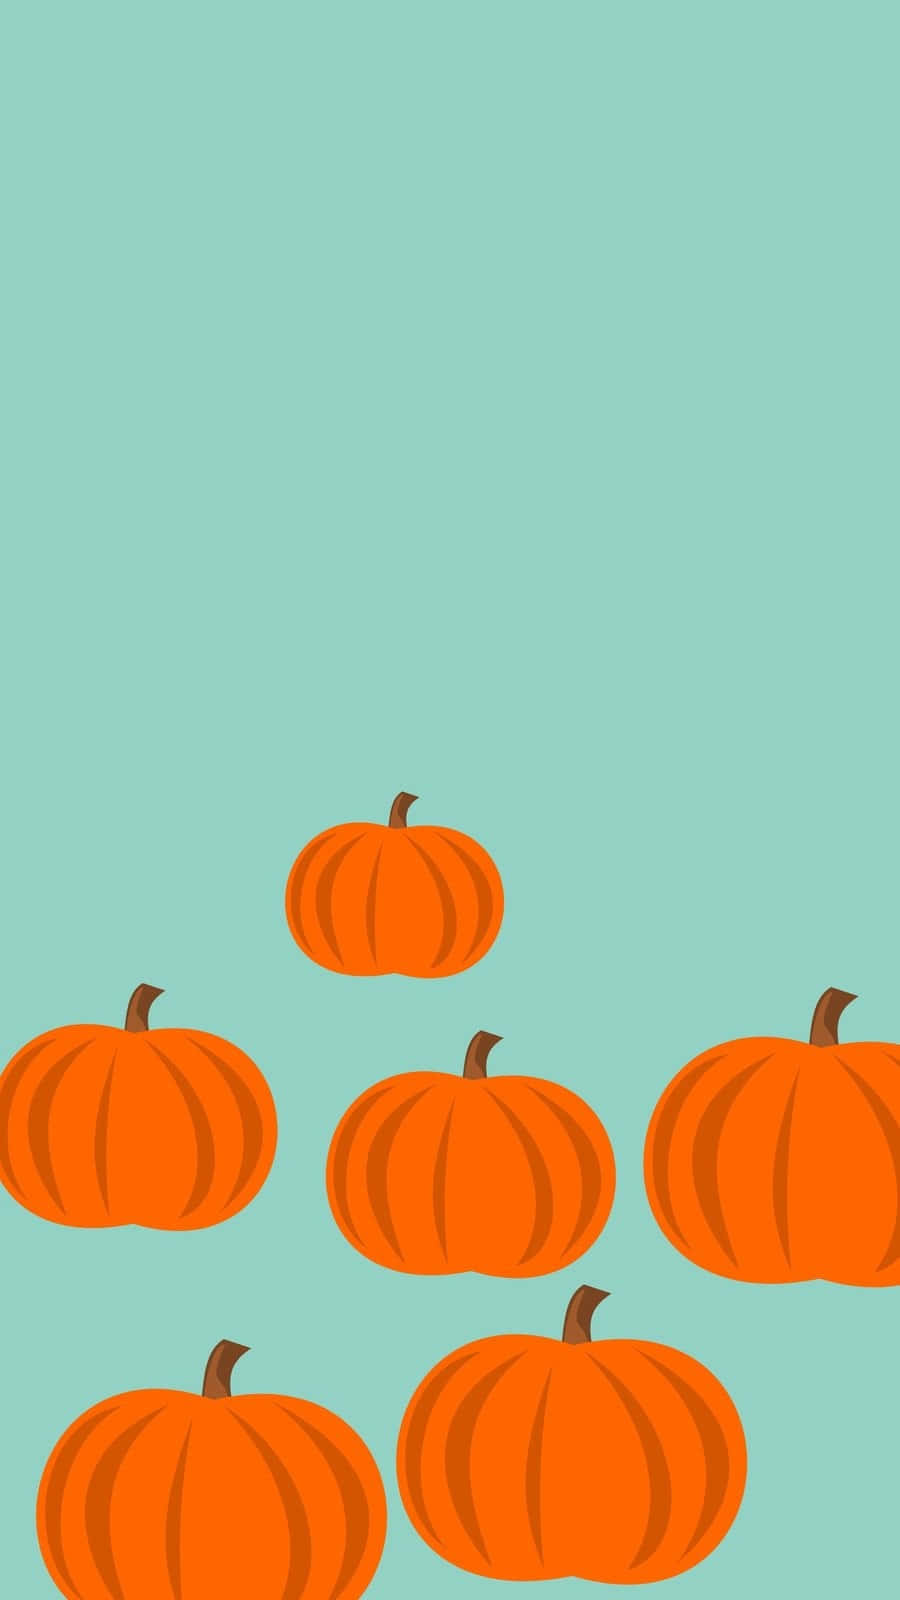 Autumn Pumpkins Lock Screen Wallpaper